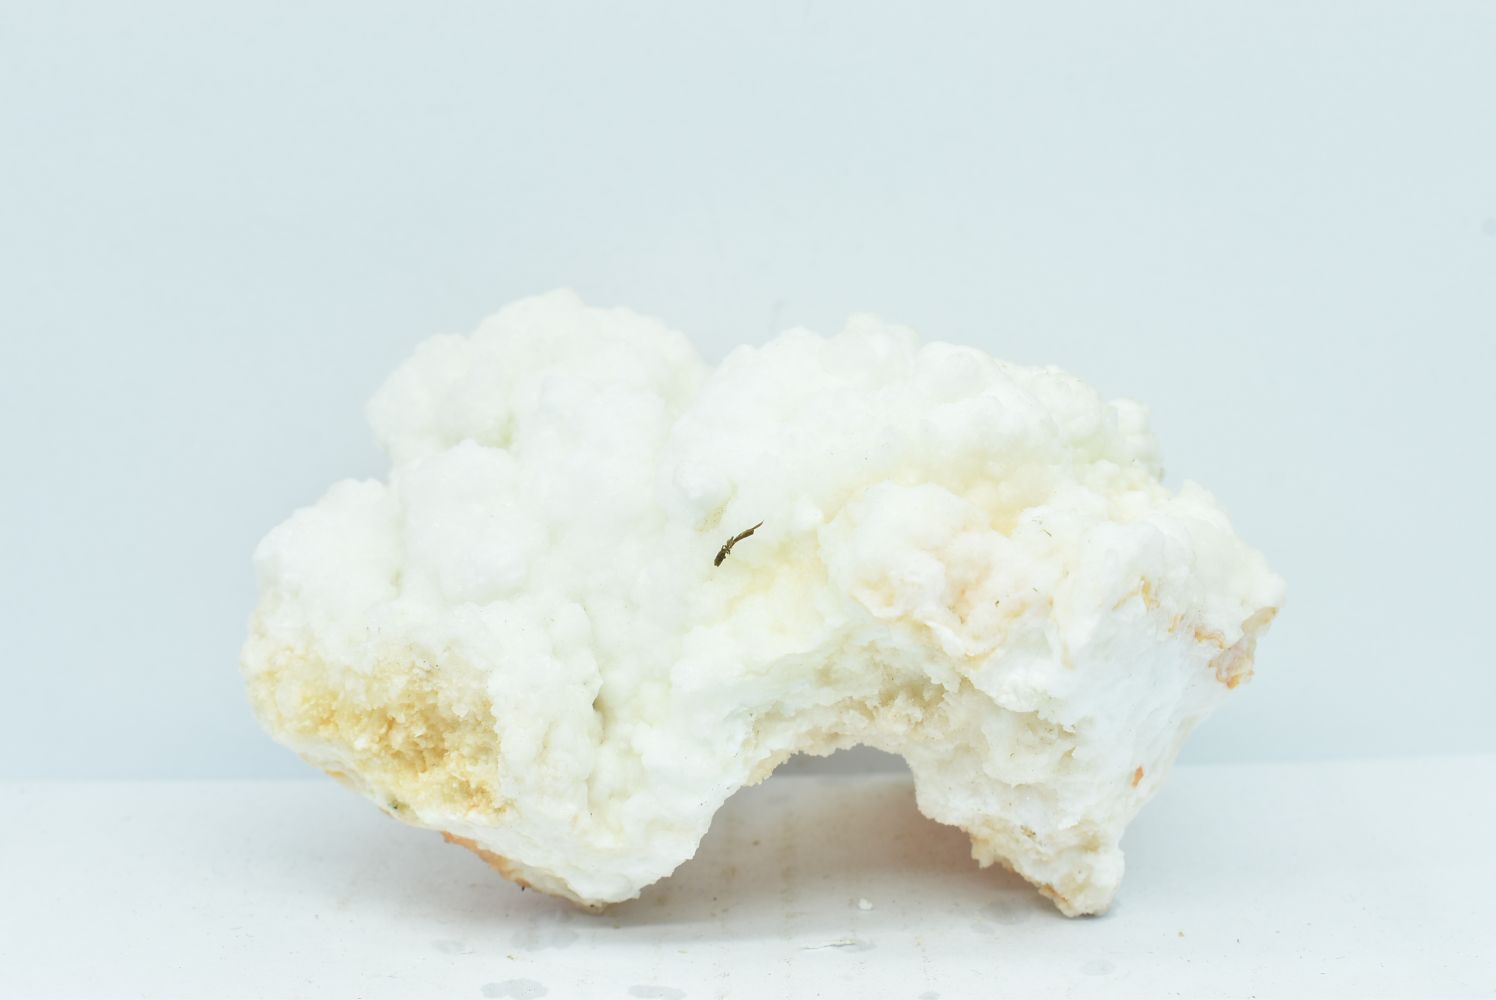 White Aragonite